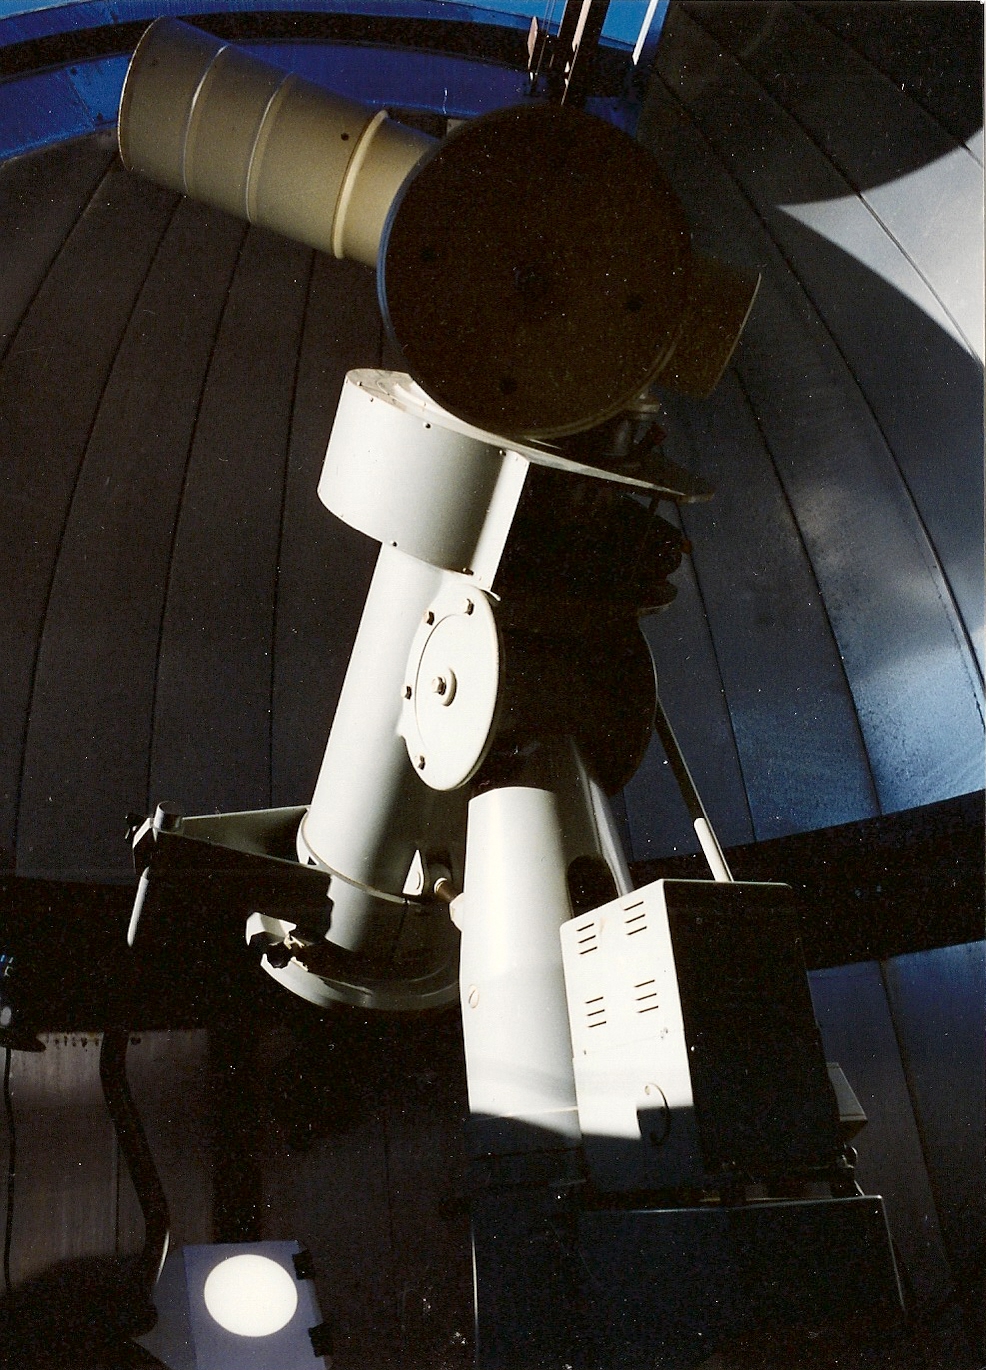 epso telescope